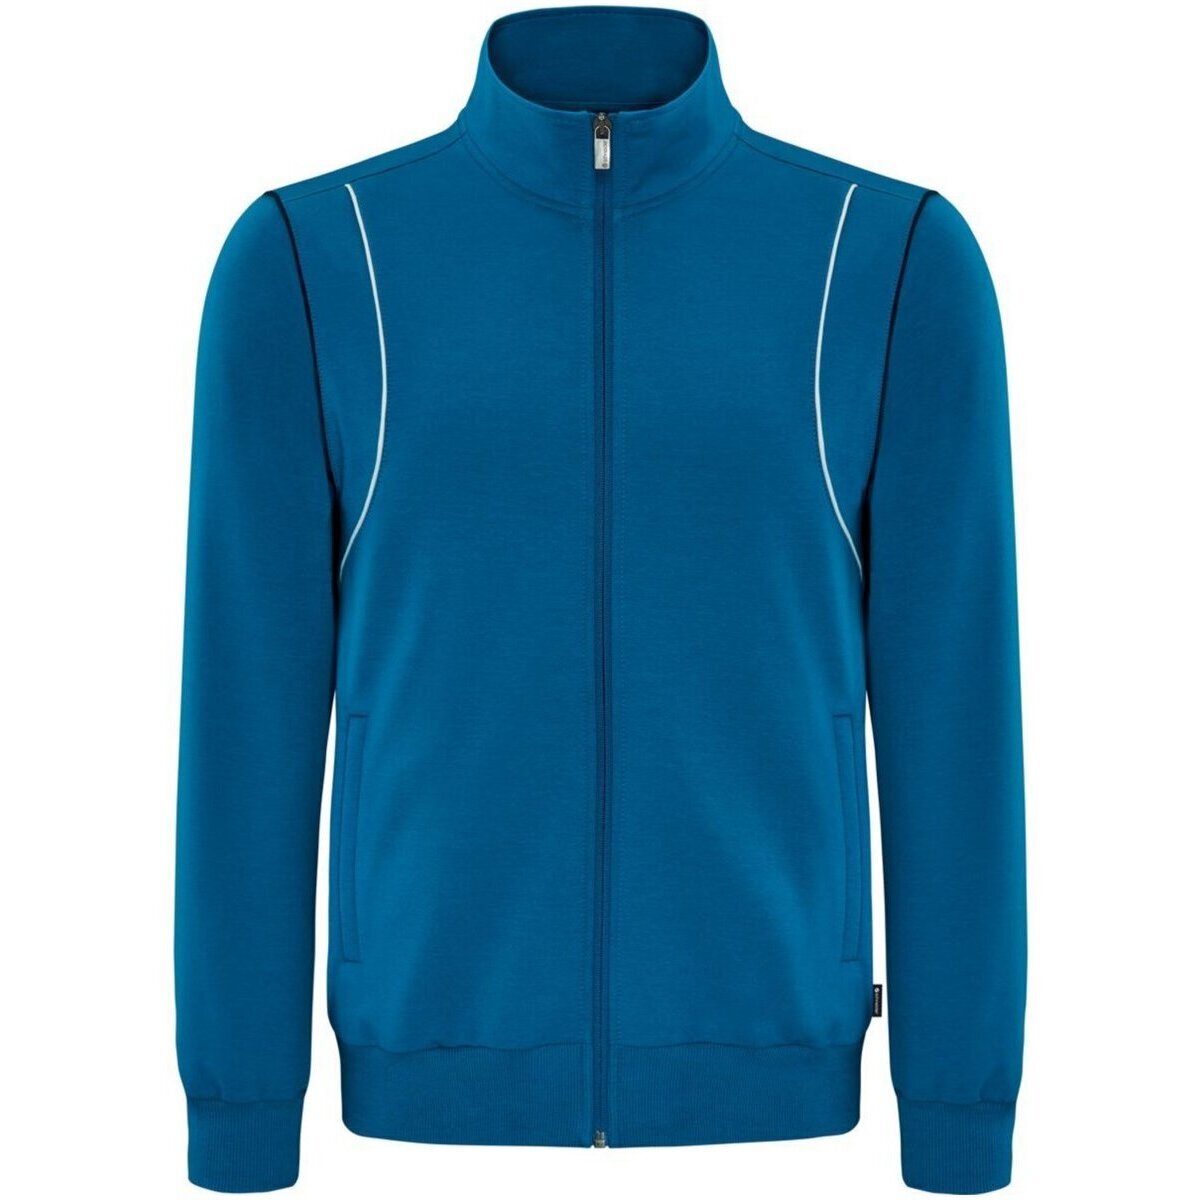 Kleidung Herren Jacken Schneider Sportswear Sport KENLEYM-JACKE 4251/7410 7410 Blau